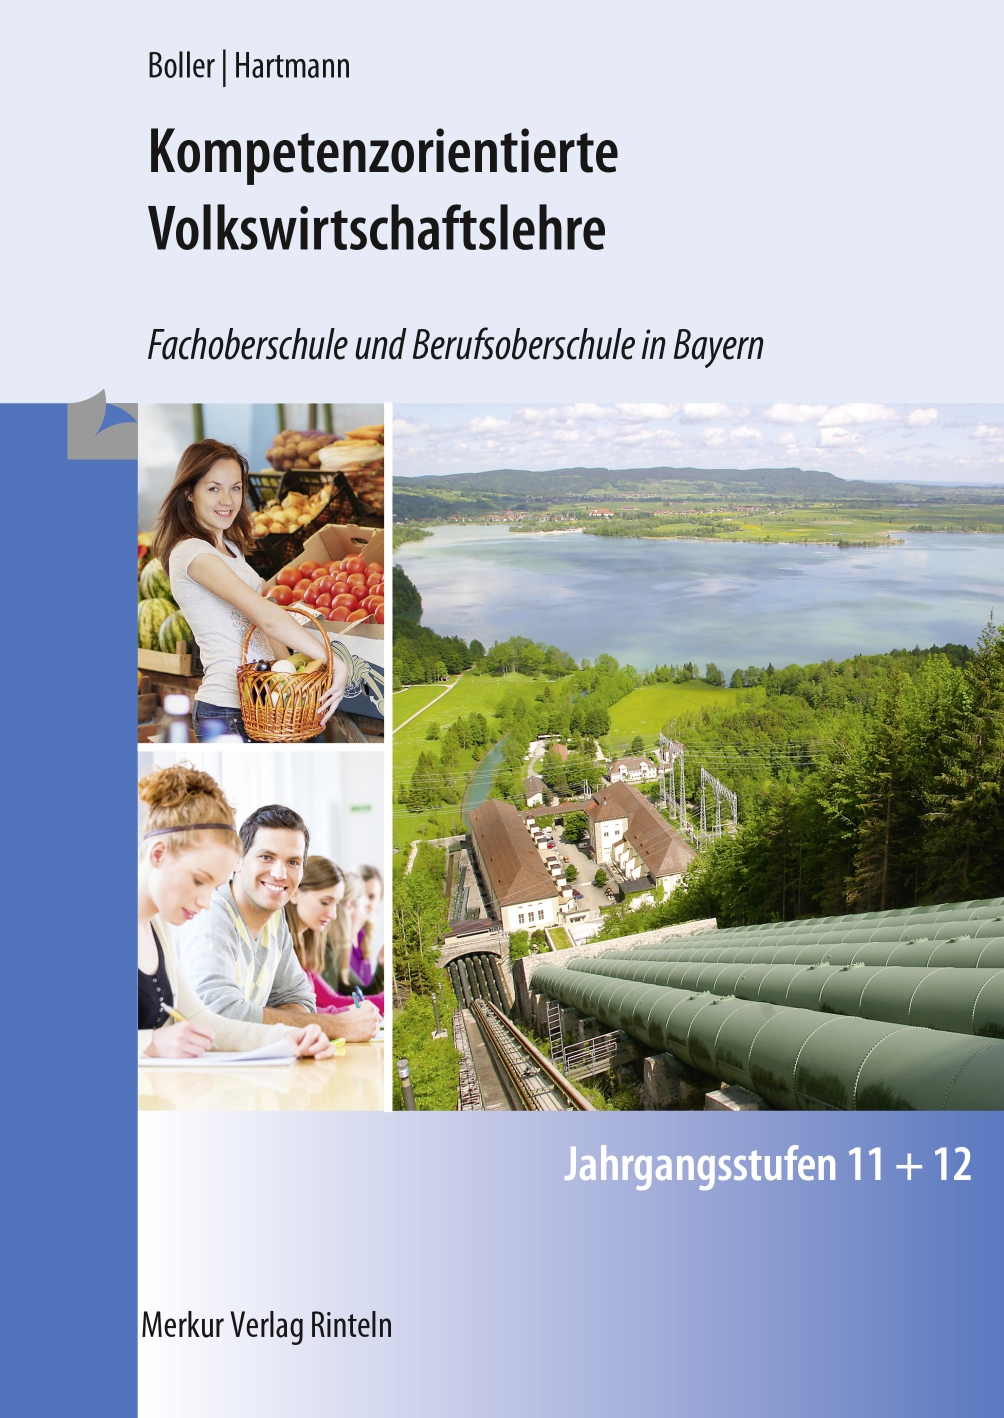 Kompetenzorientierte Volkswirtschaftslehre Fachoberschule und Berufsoberschule in Bayern Jahrgangsstufen 11 + 12